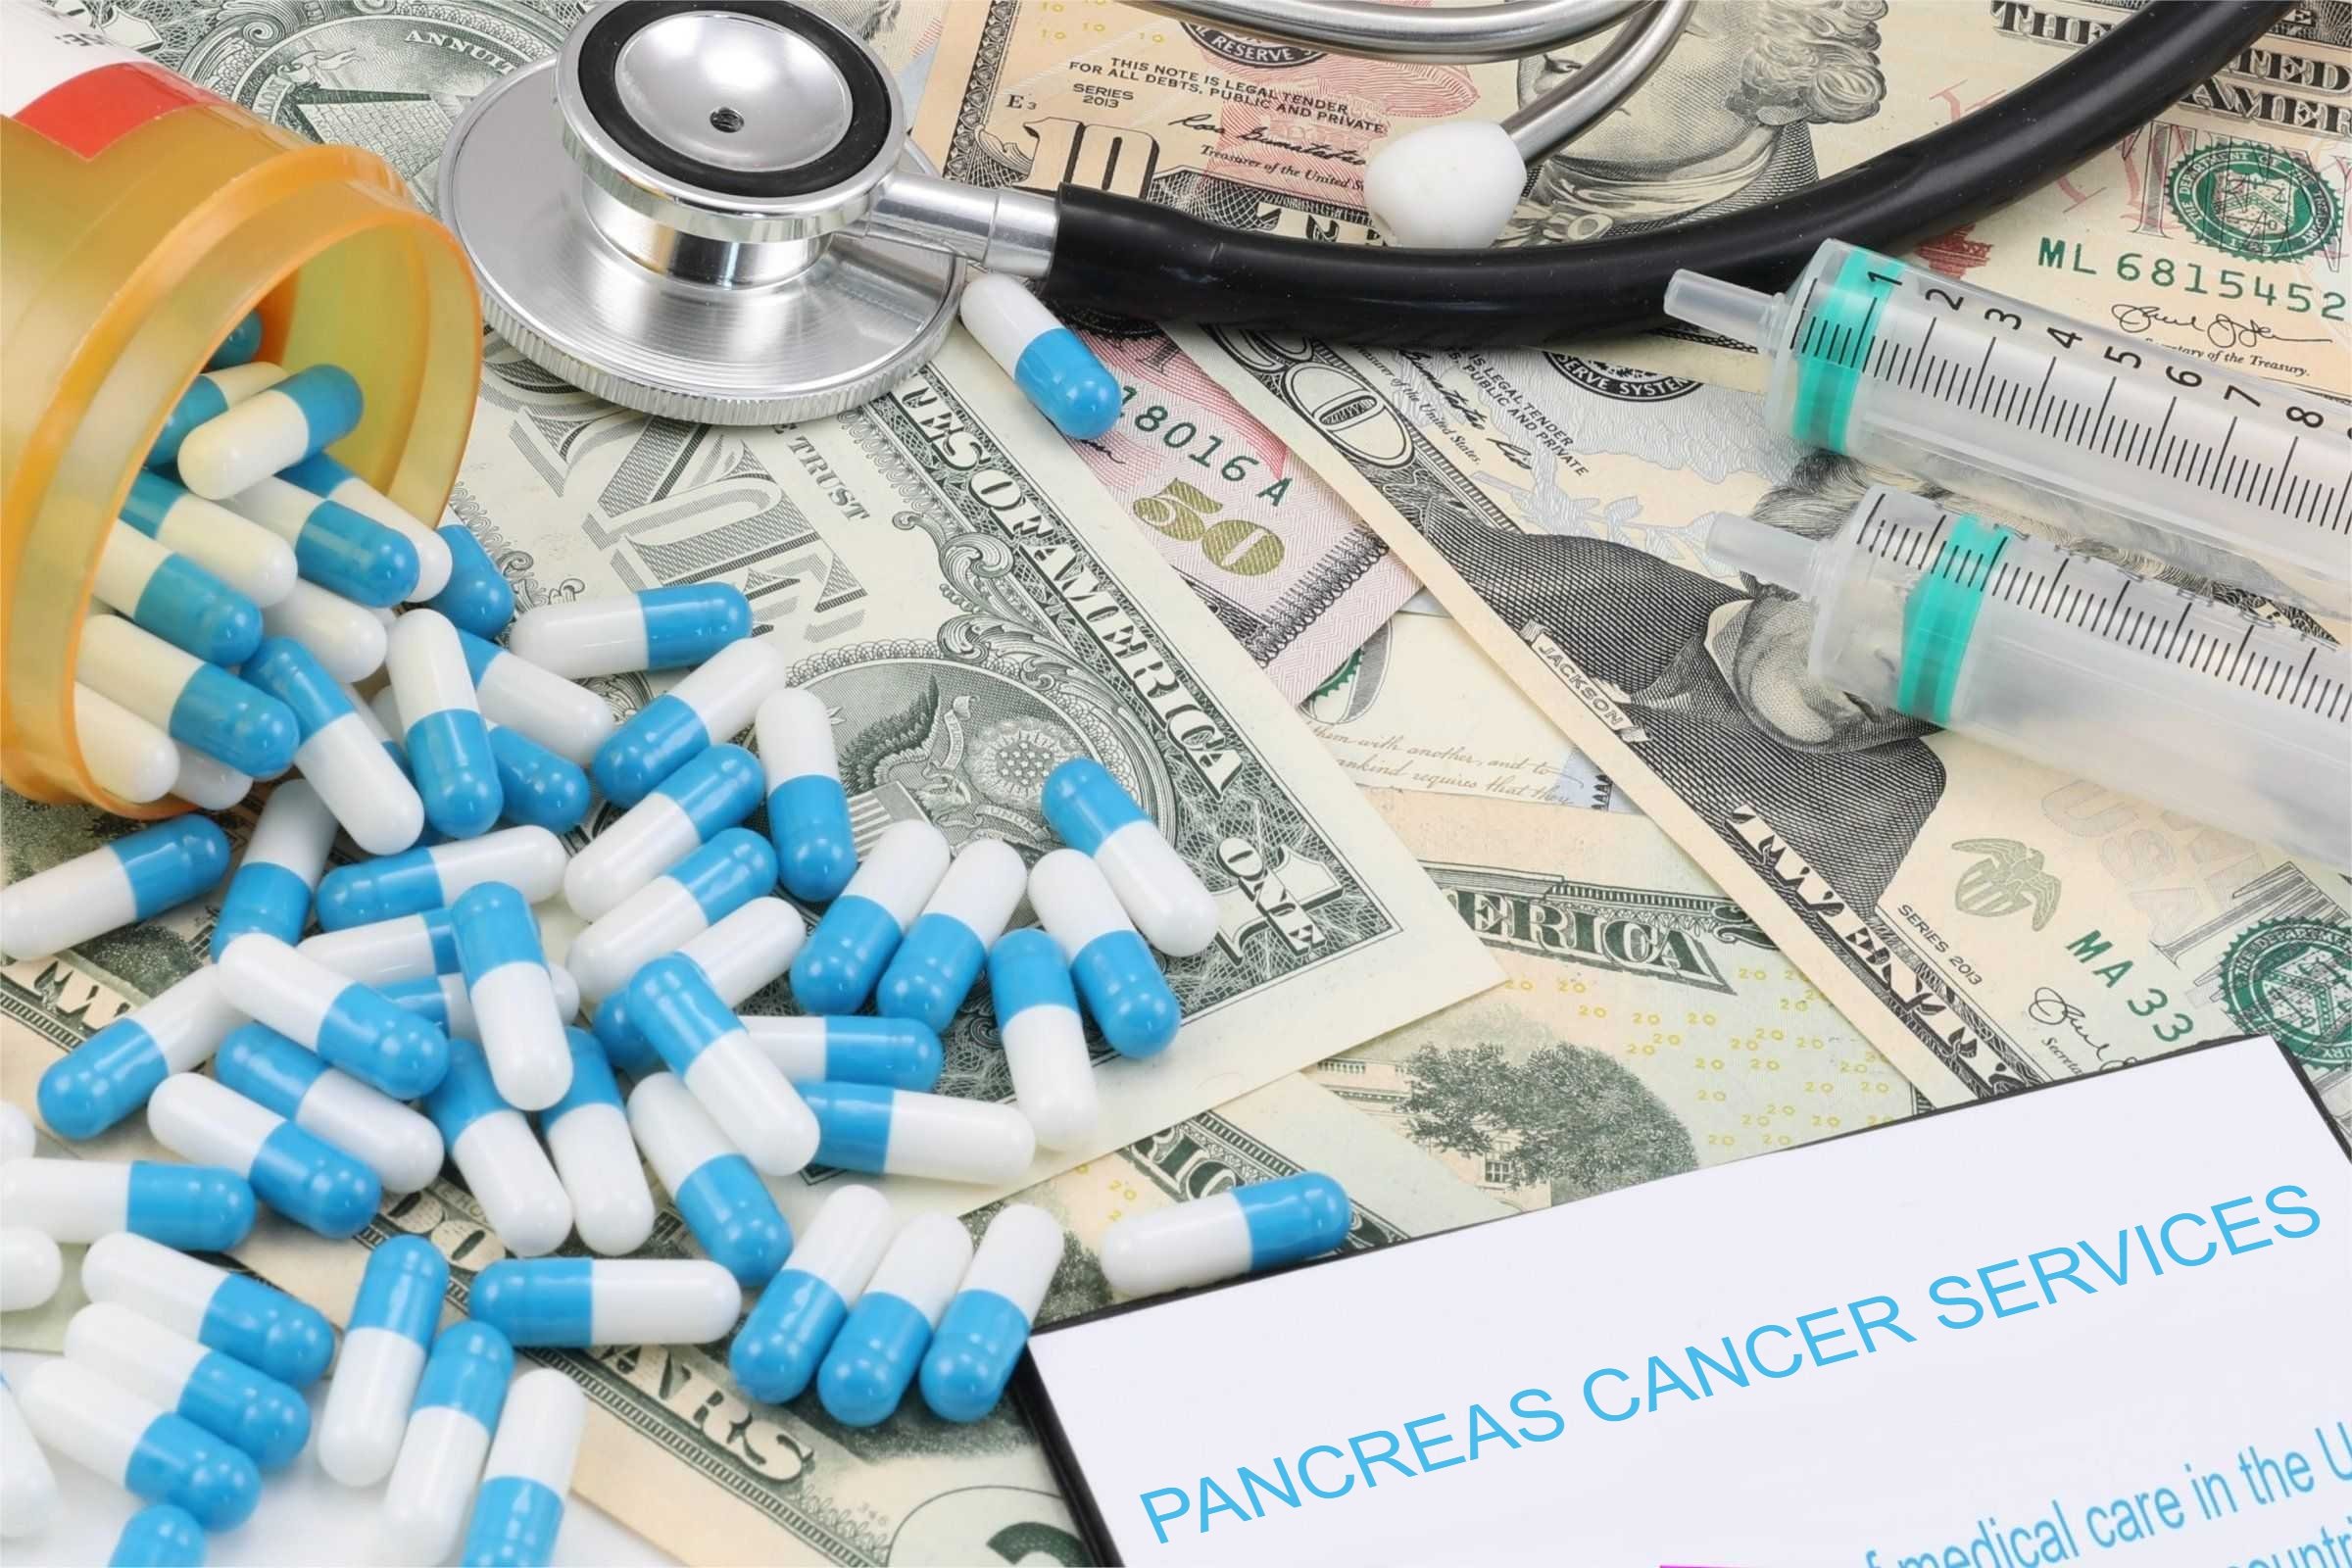 pancreas cancer services